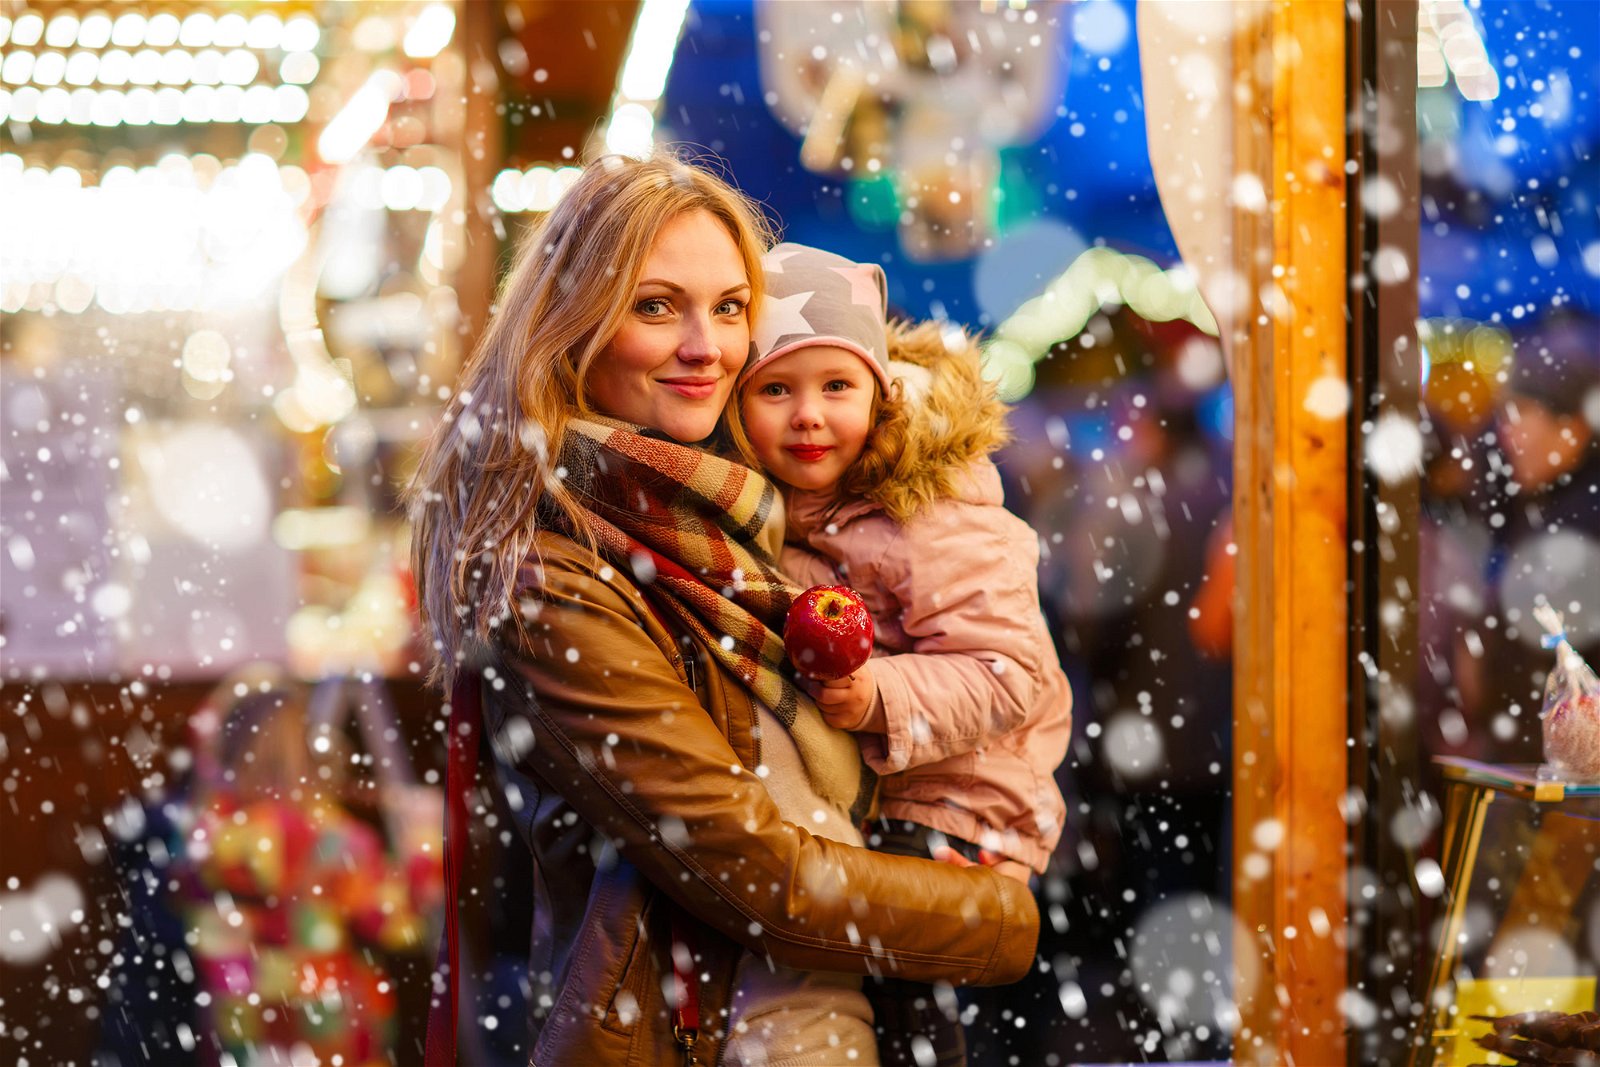 Frau mit Kind auf dem Weihnachtsmarkt - Weihnachts-Erlebniswelt